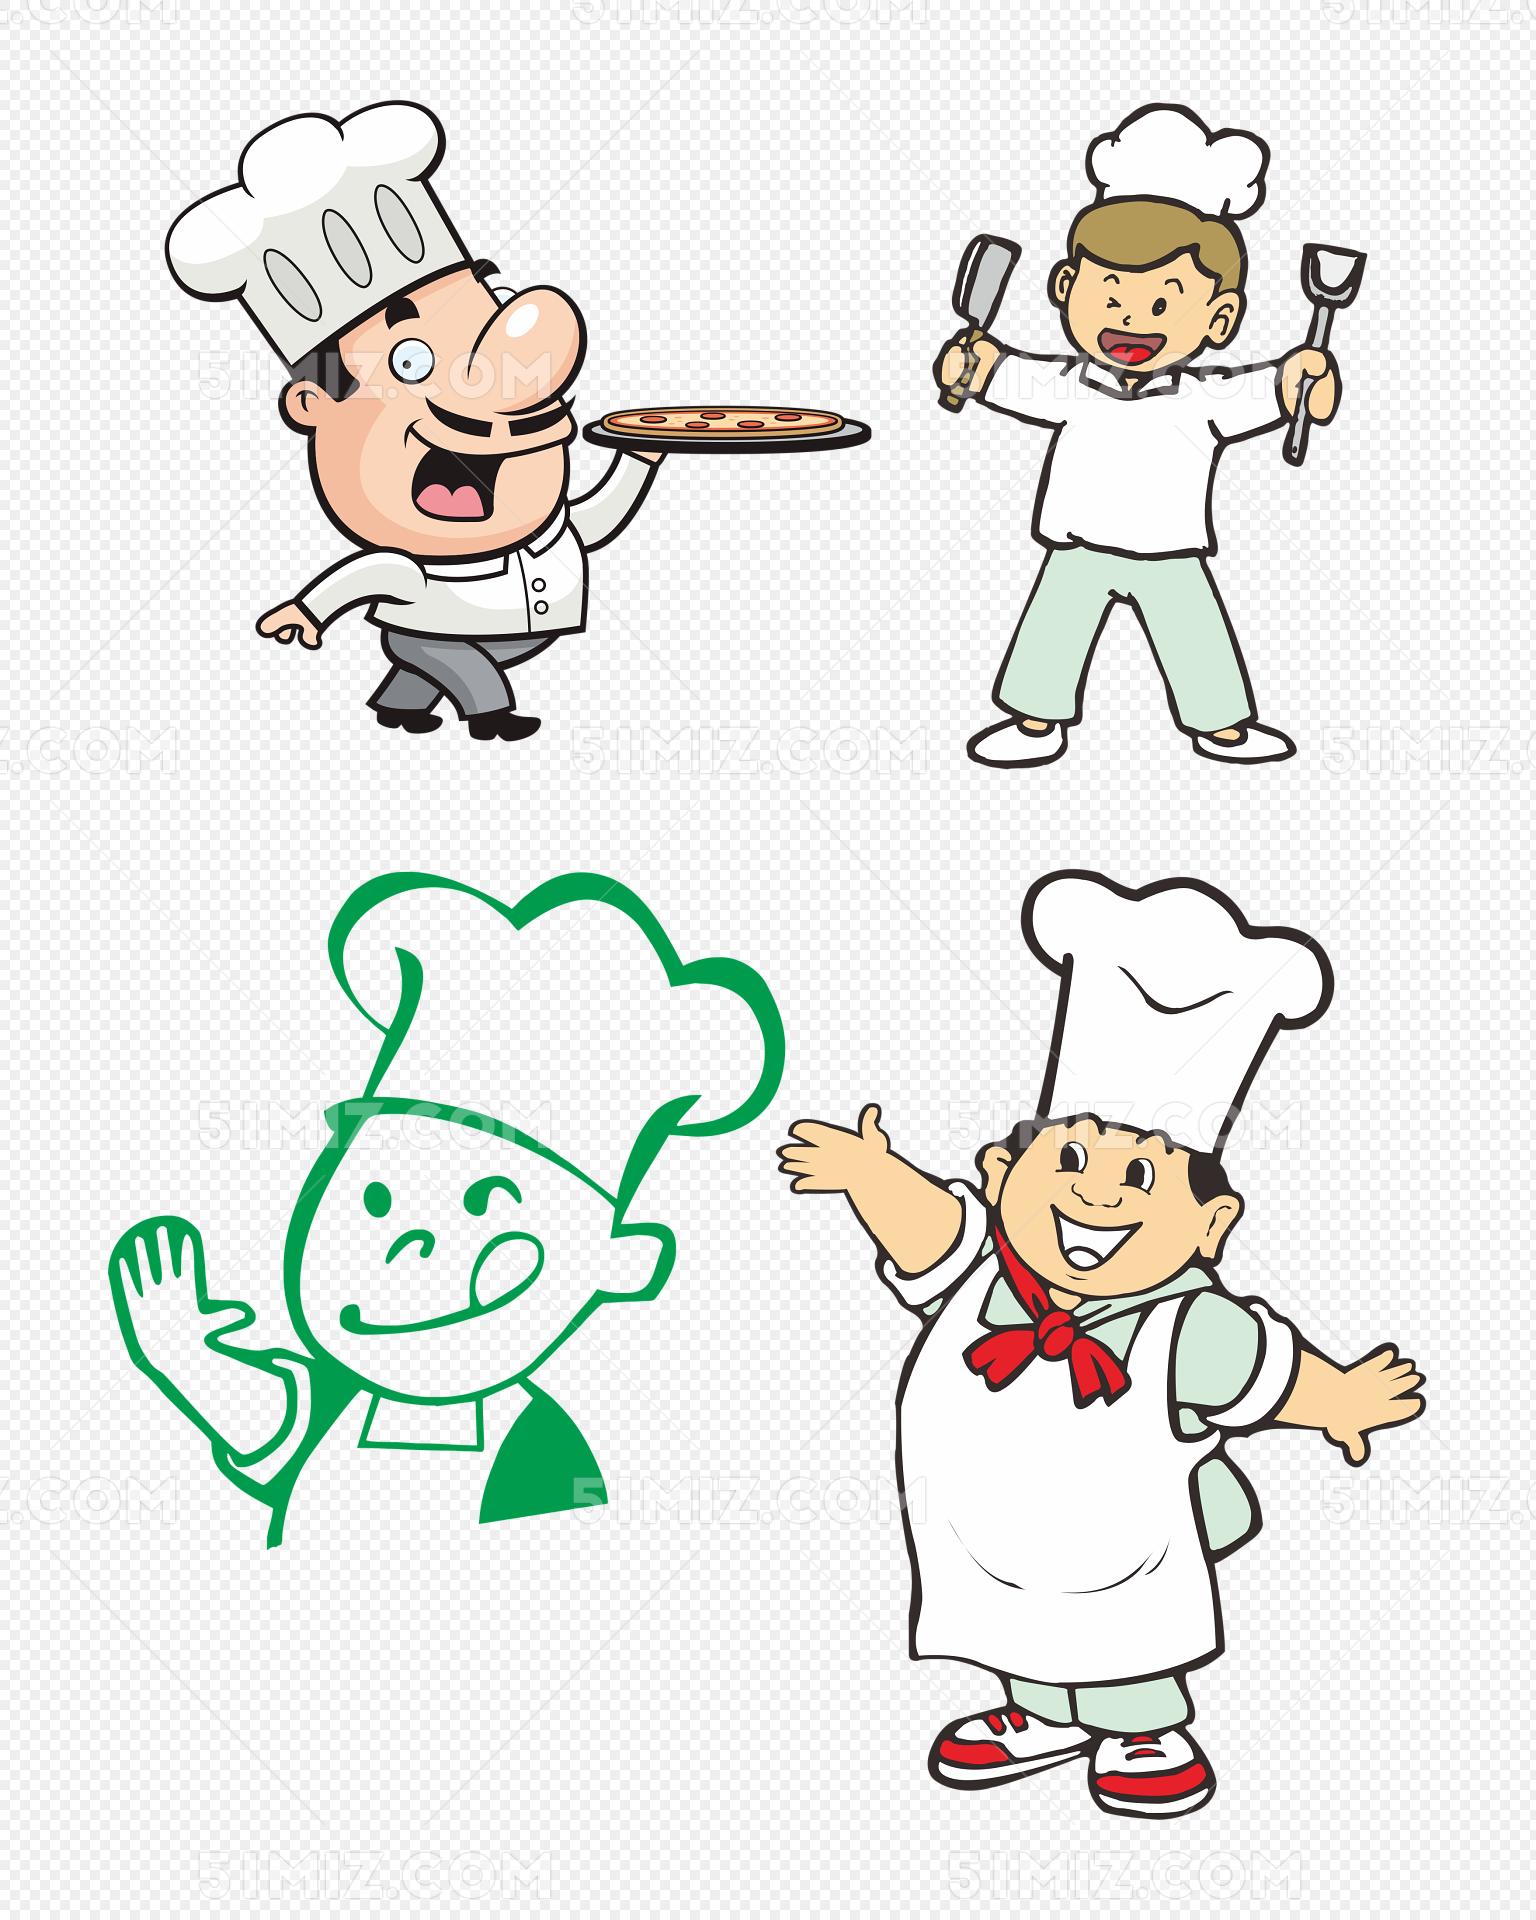 幽默开心的厨师卡通矢量免费下载图片素材免费下载 - 觅知网